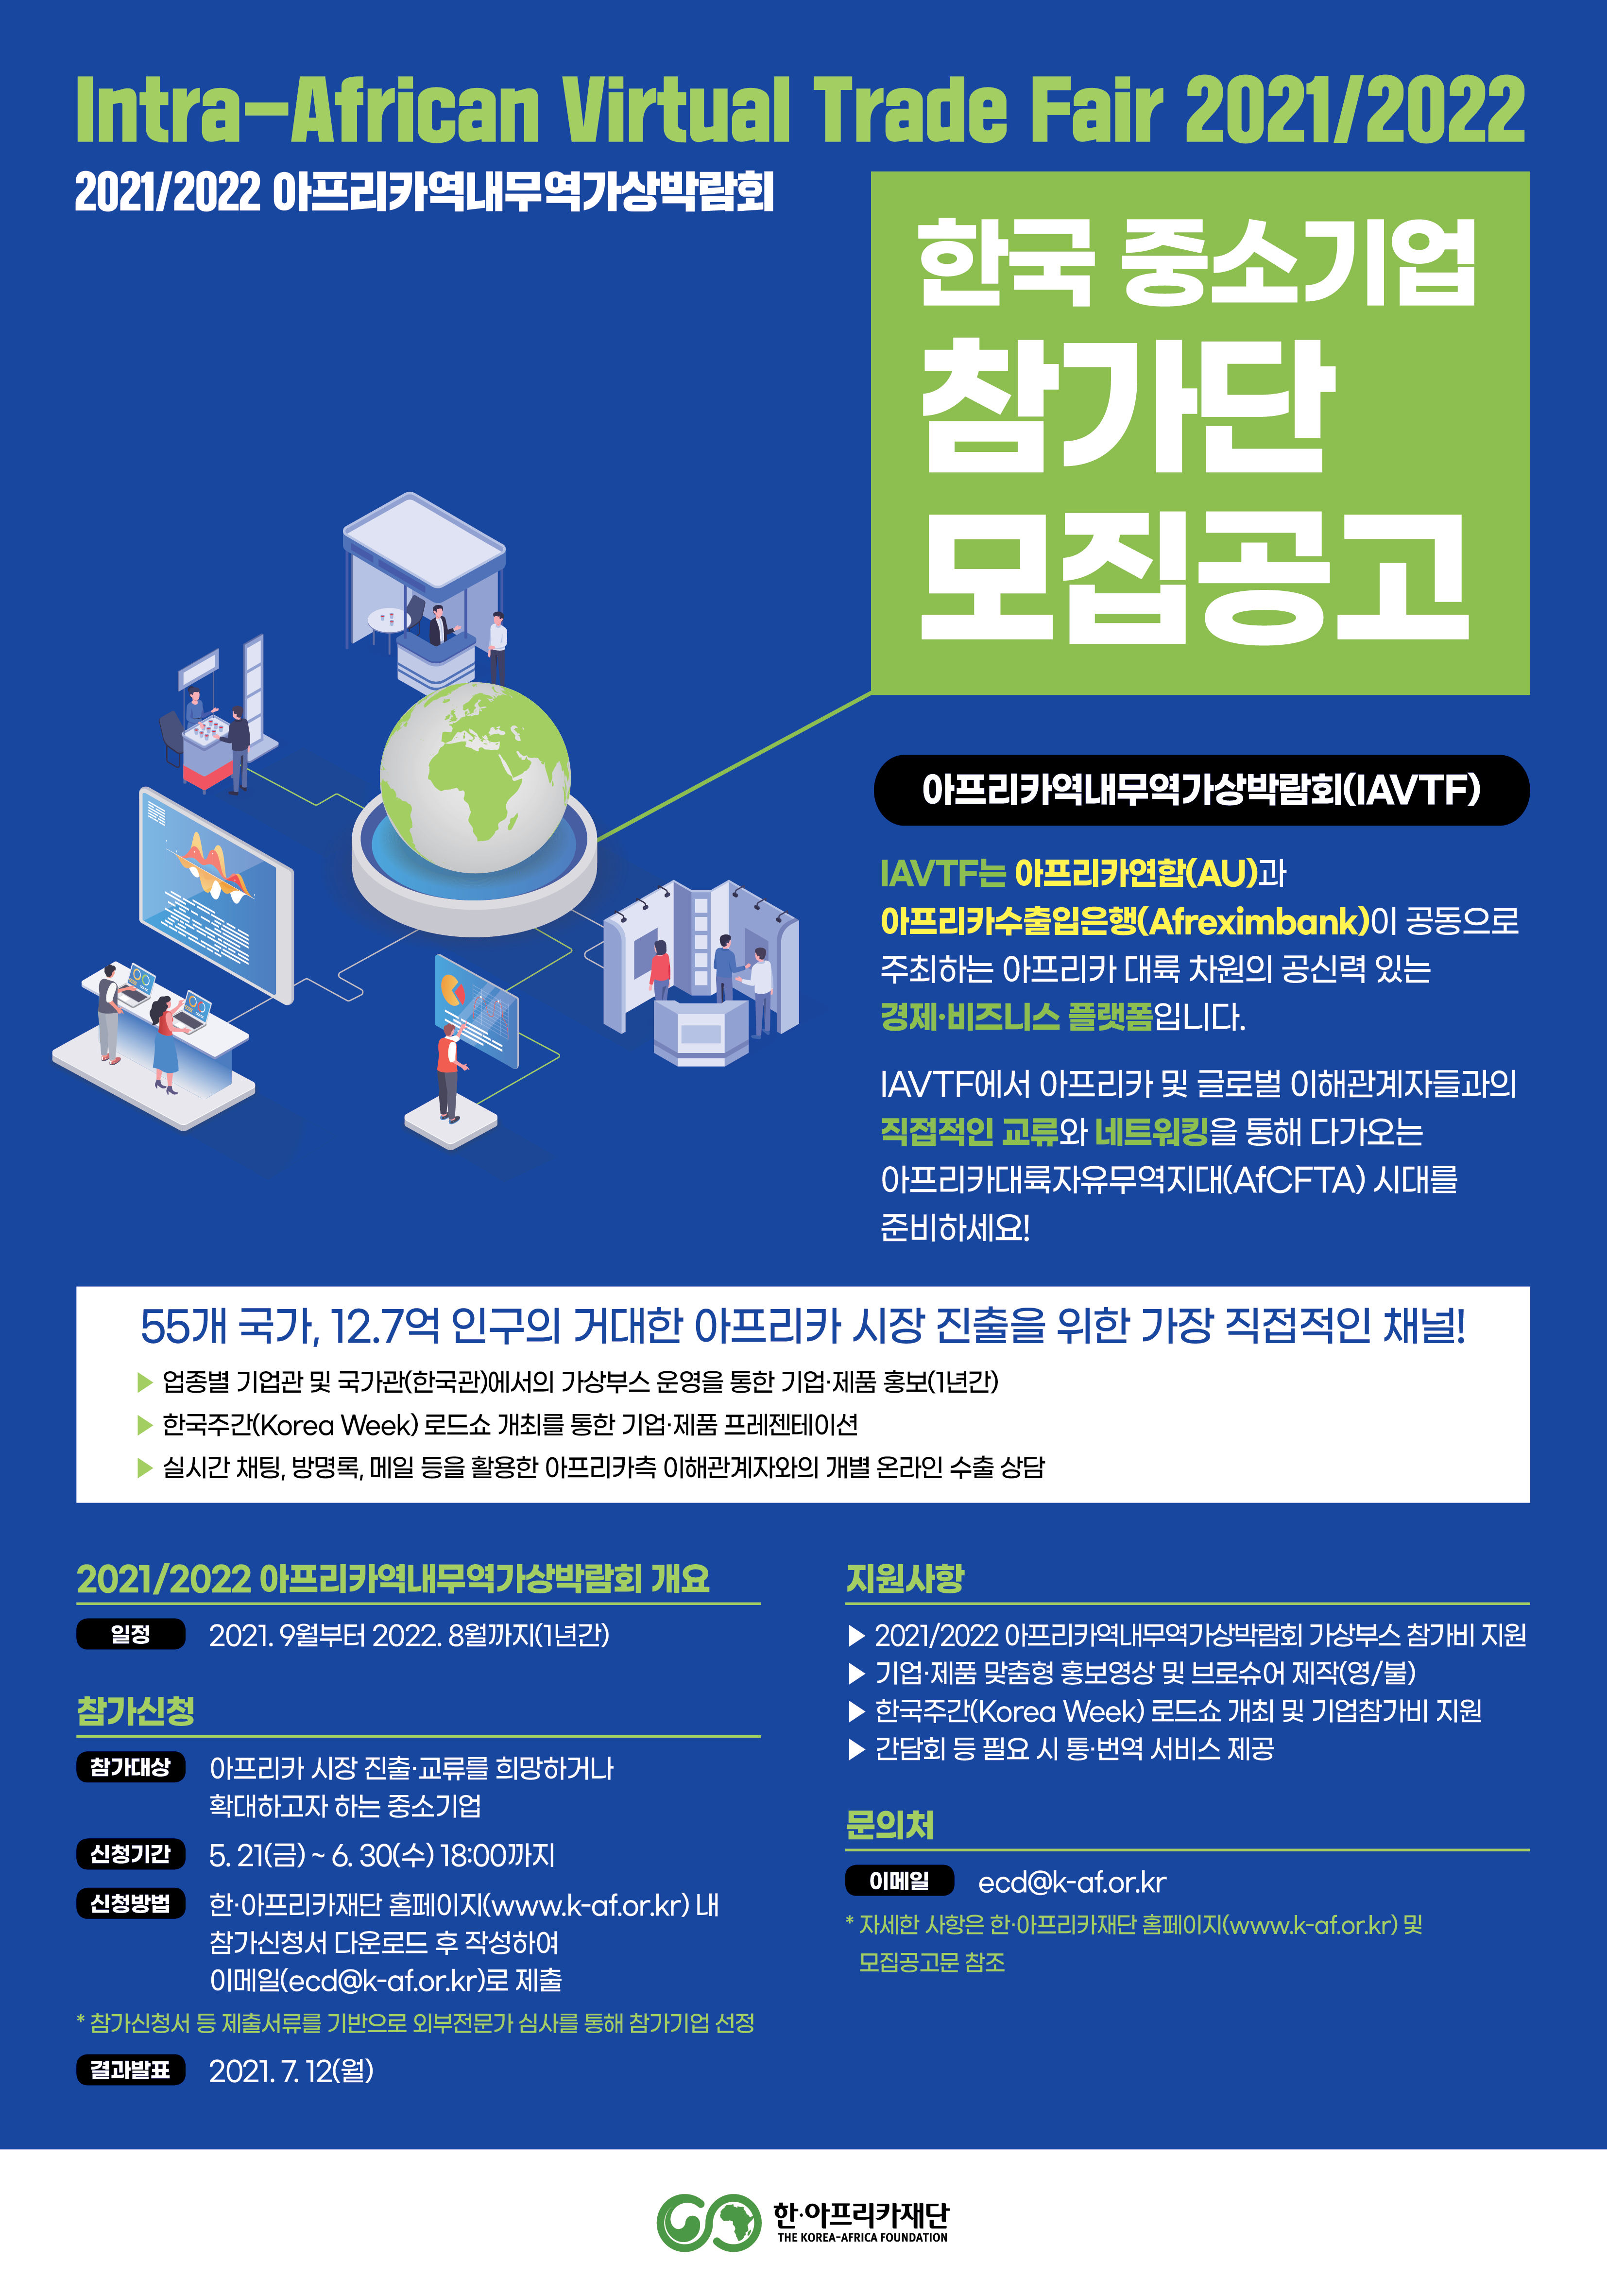 2021/2022 아프리카역내무역가상박람회(IAVTF 2021/2022)」 한국 중소기업 참가단 모집공고 첨부#2